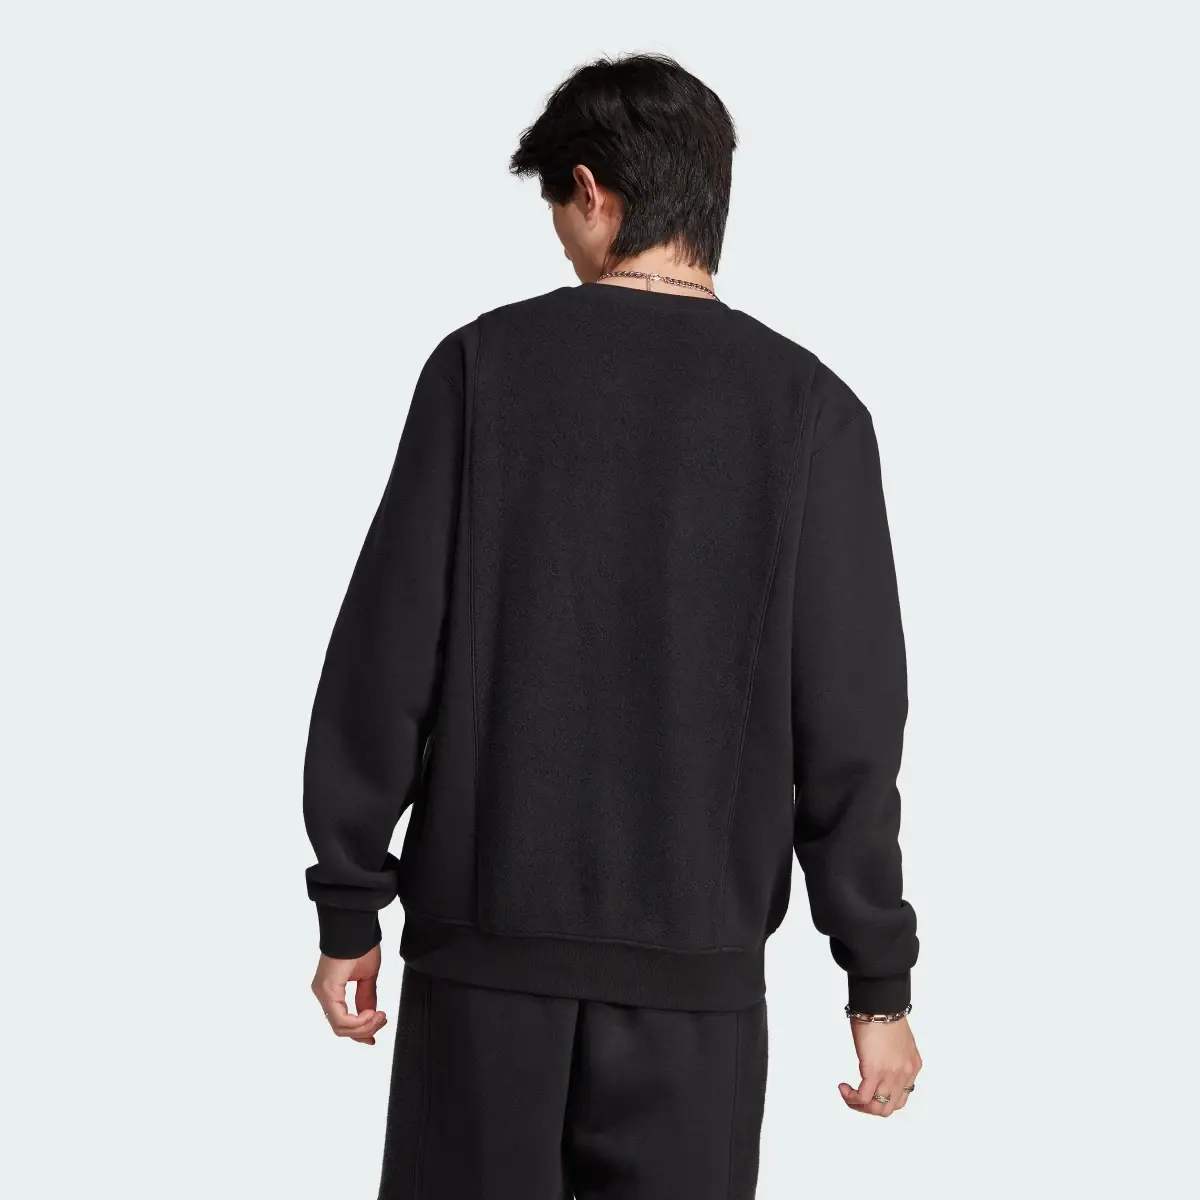 Adidas Essentials+ Trefoil Reverse Material Crew Sweatshirt. 3